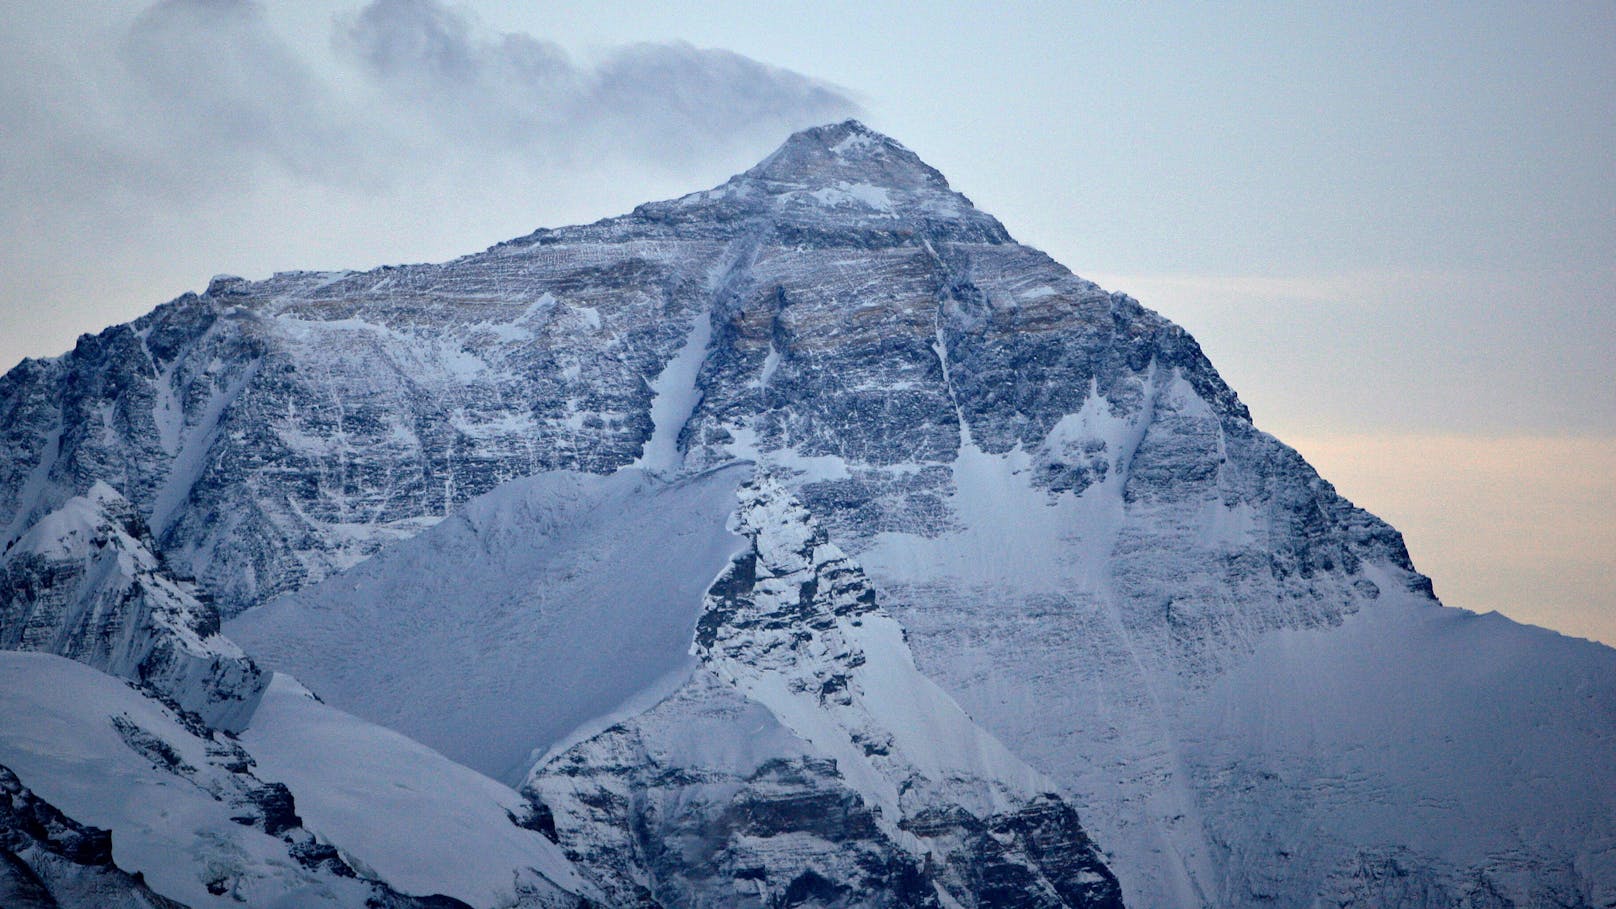 Vermisste auf dem Mount Everest – 2. Leiche gefunden